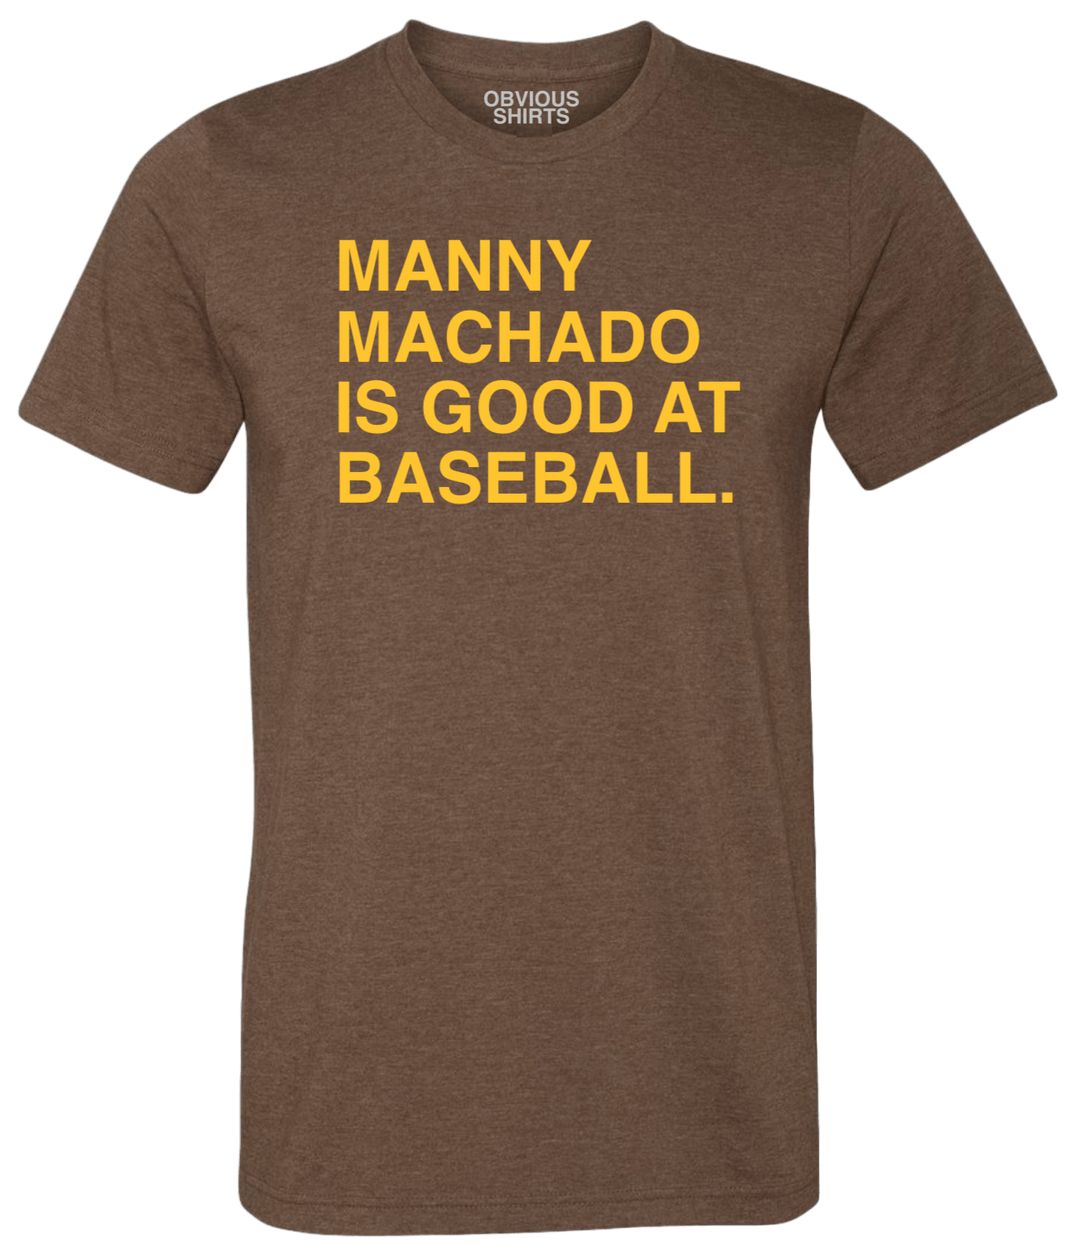 manny machado is good at baseball shirt